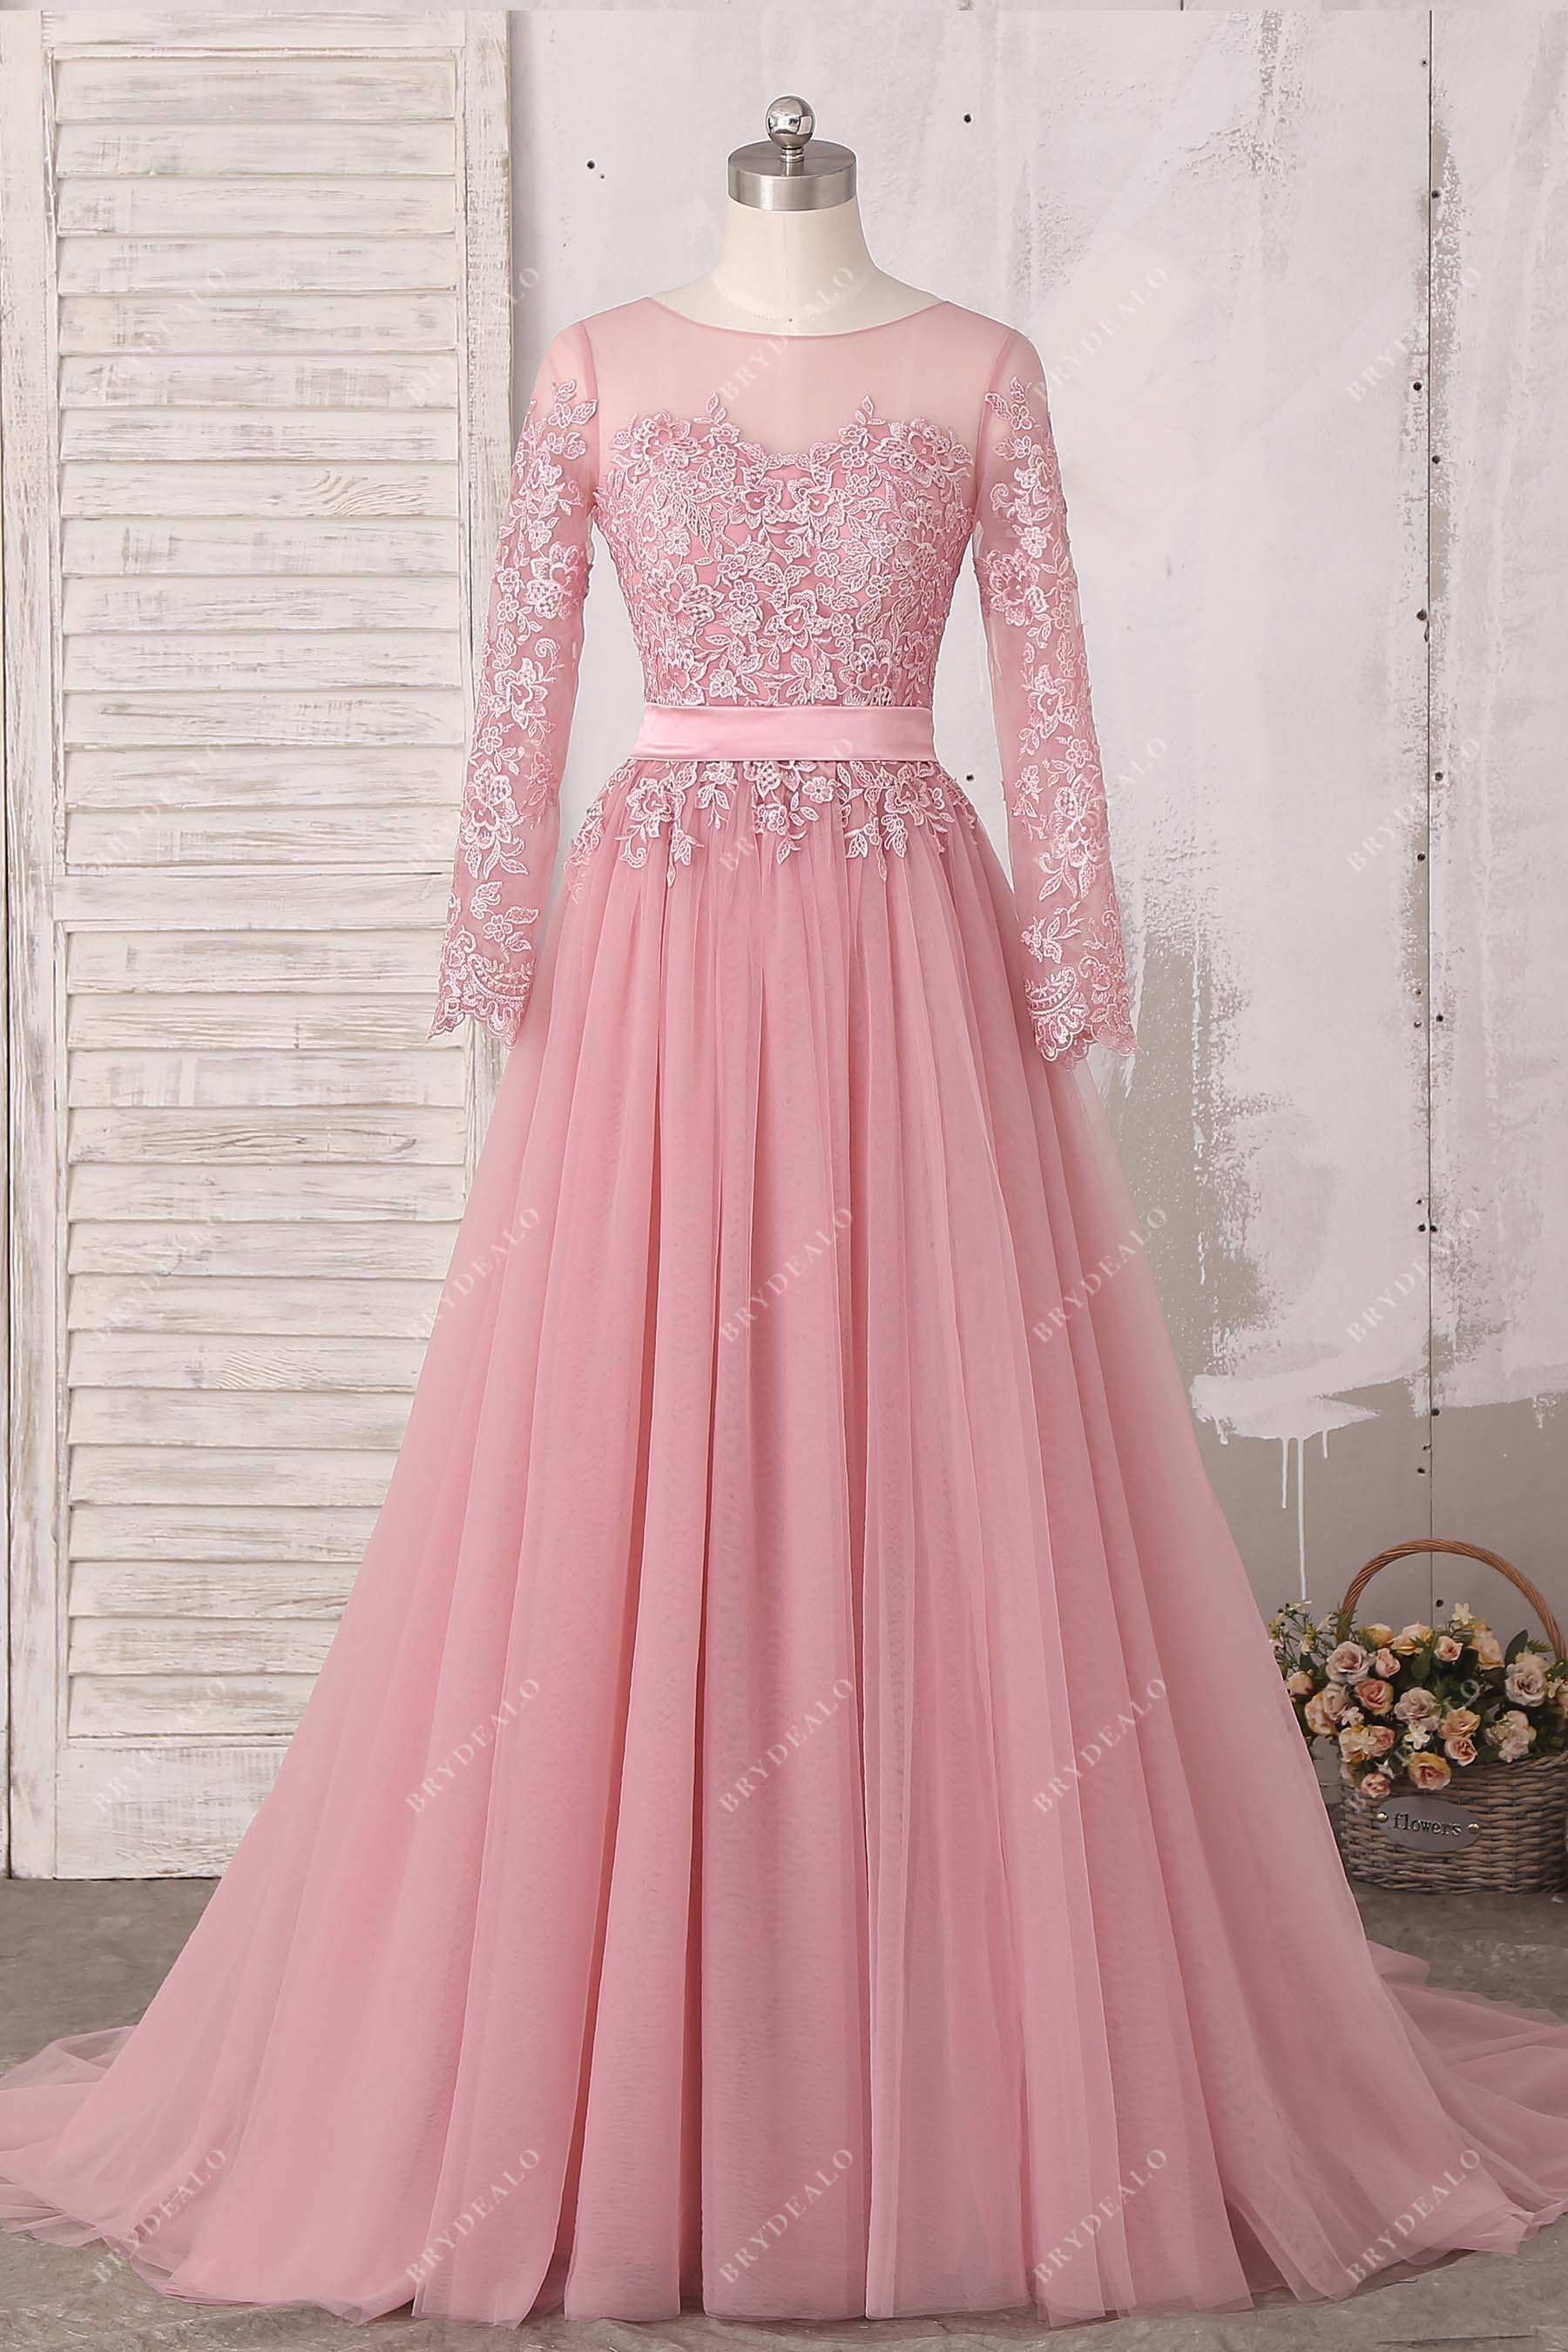 dusty pink dress